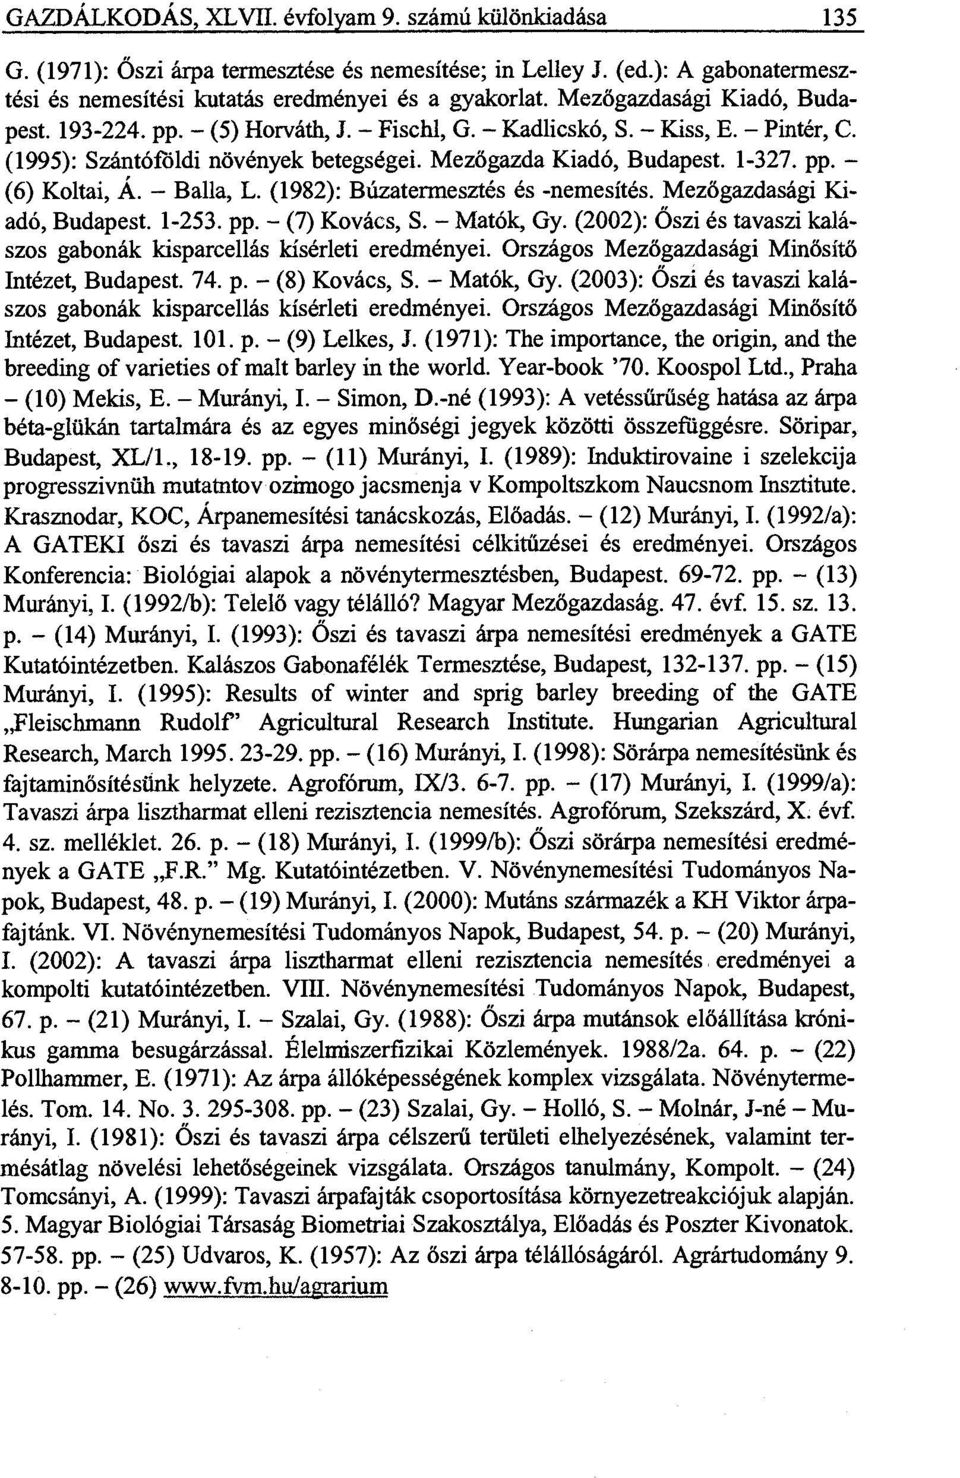 - Balla, L. (1982): Búzatermesztés és -nemesítés. Mezőgazdasági Kiadó, Budapest. 1-253. pp. - (7) Kovács, S. - Matók, Gy. (2002): Őszi és tavaszi kalászos gabonák kisparcellás kísérleti eredményei.